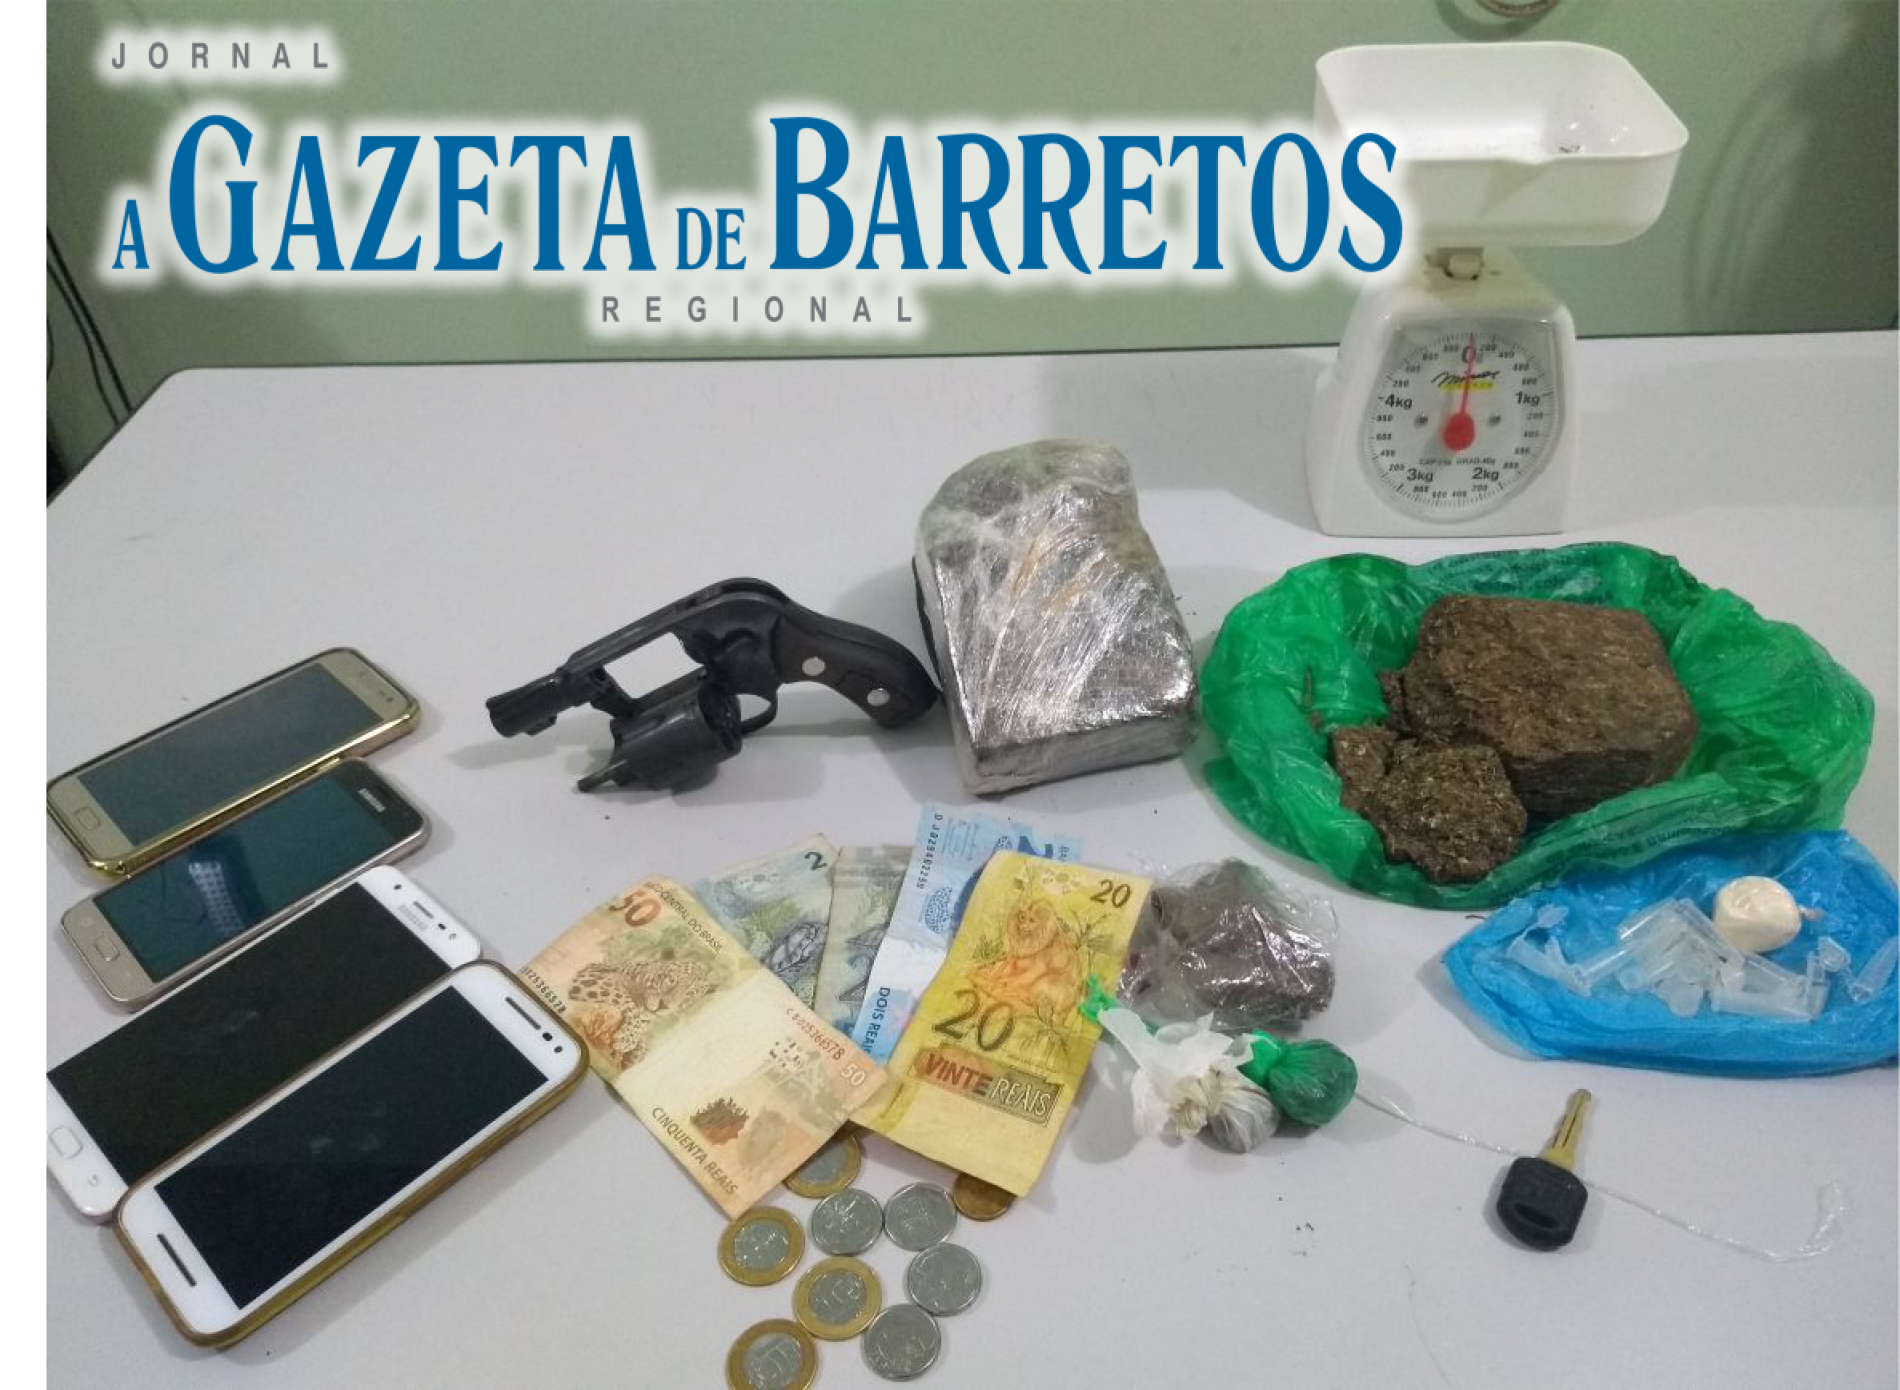 BARRETOS: Três pessoas são presas por tráfico de drogas em operação das equipes especializadas da Policia Militar